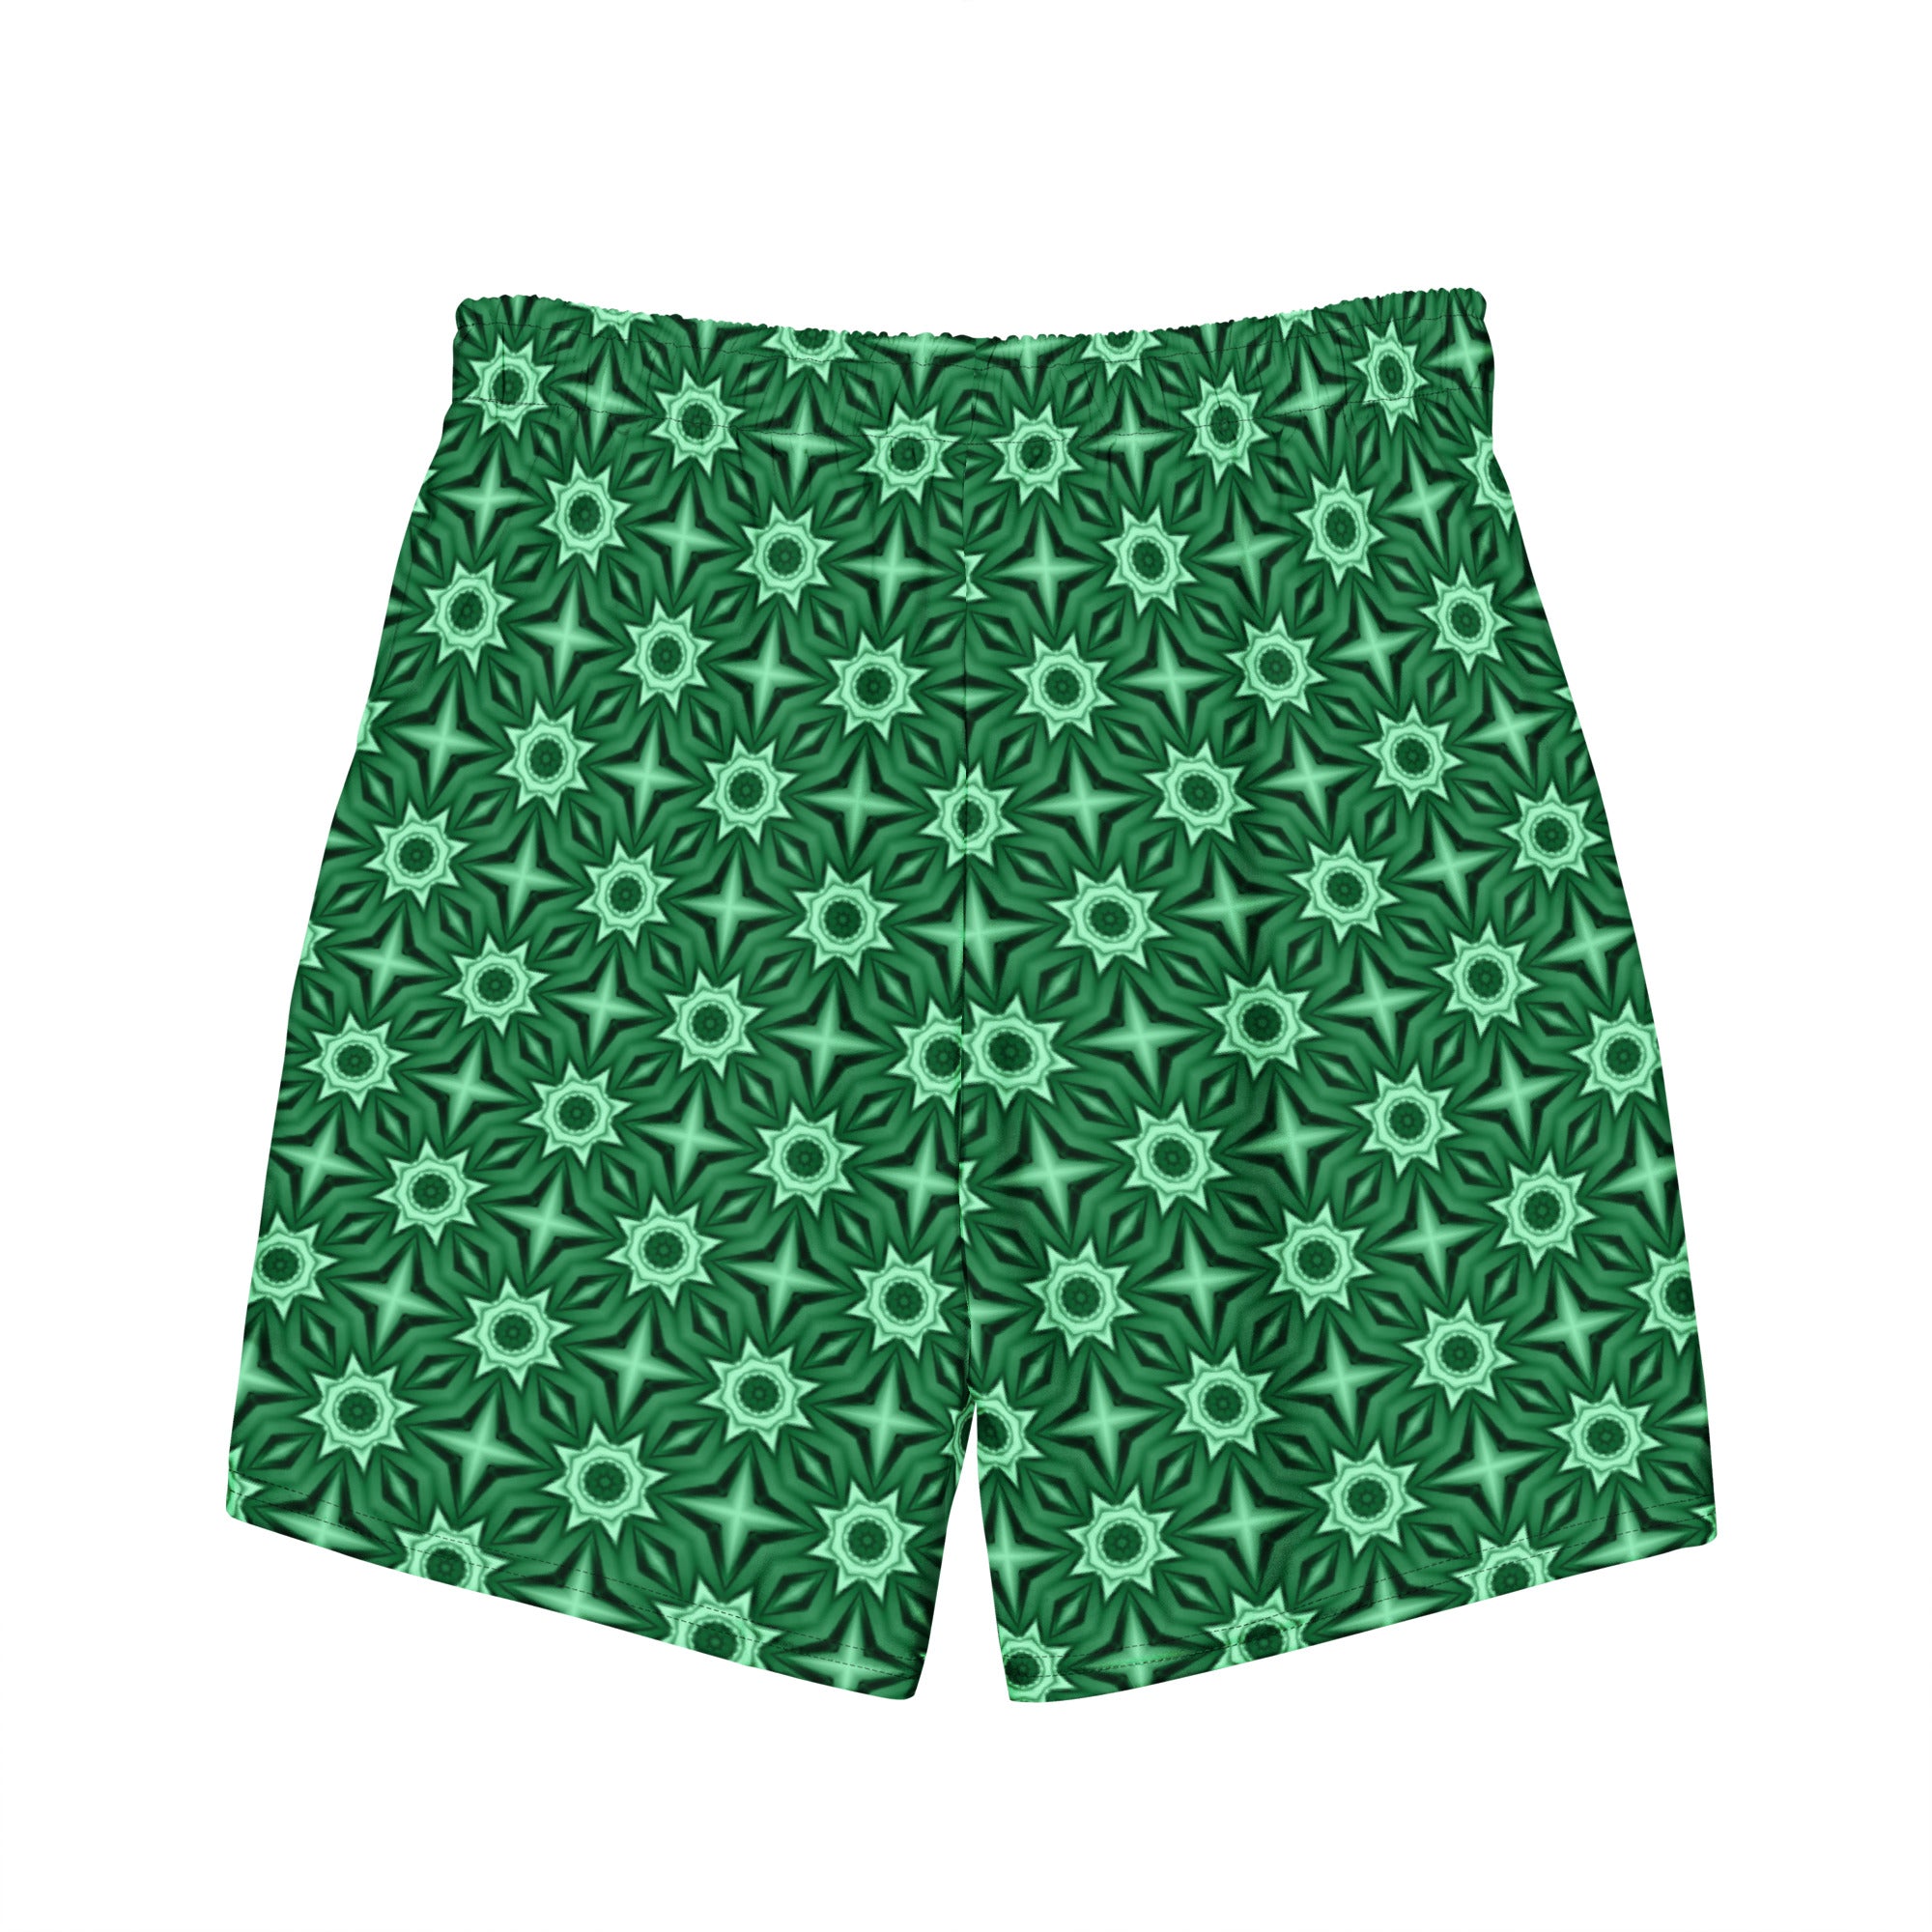 Green floral swim trunks for men